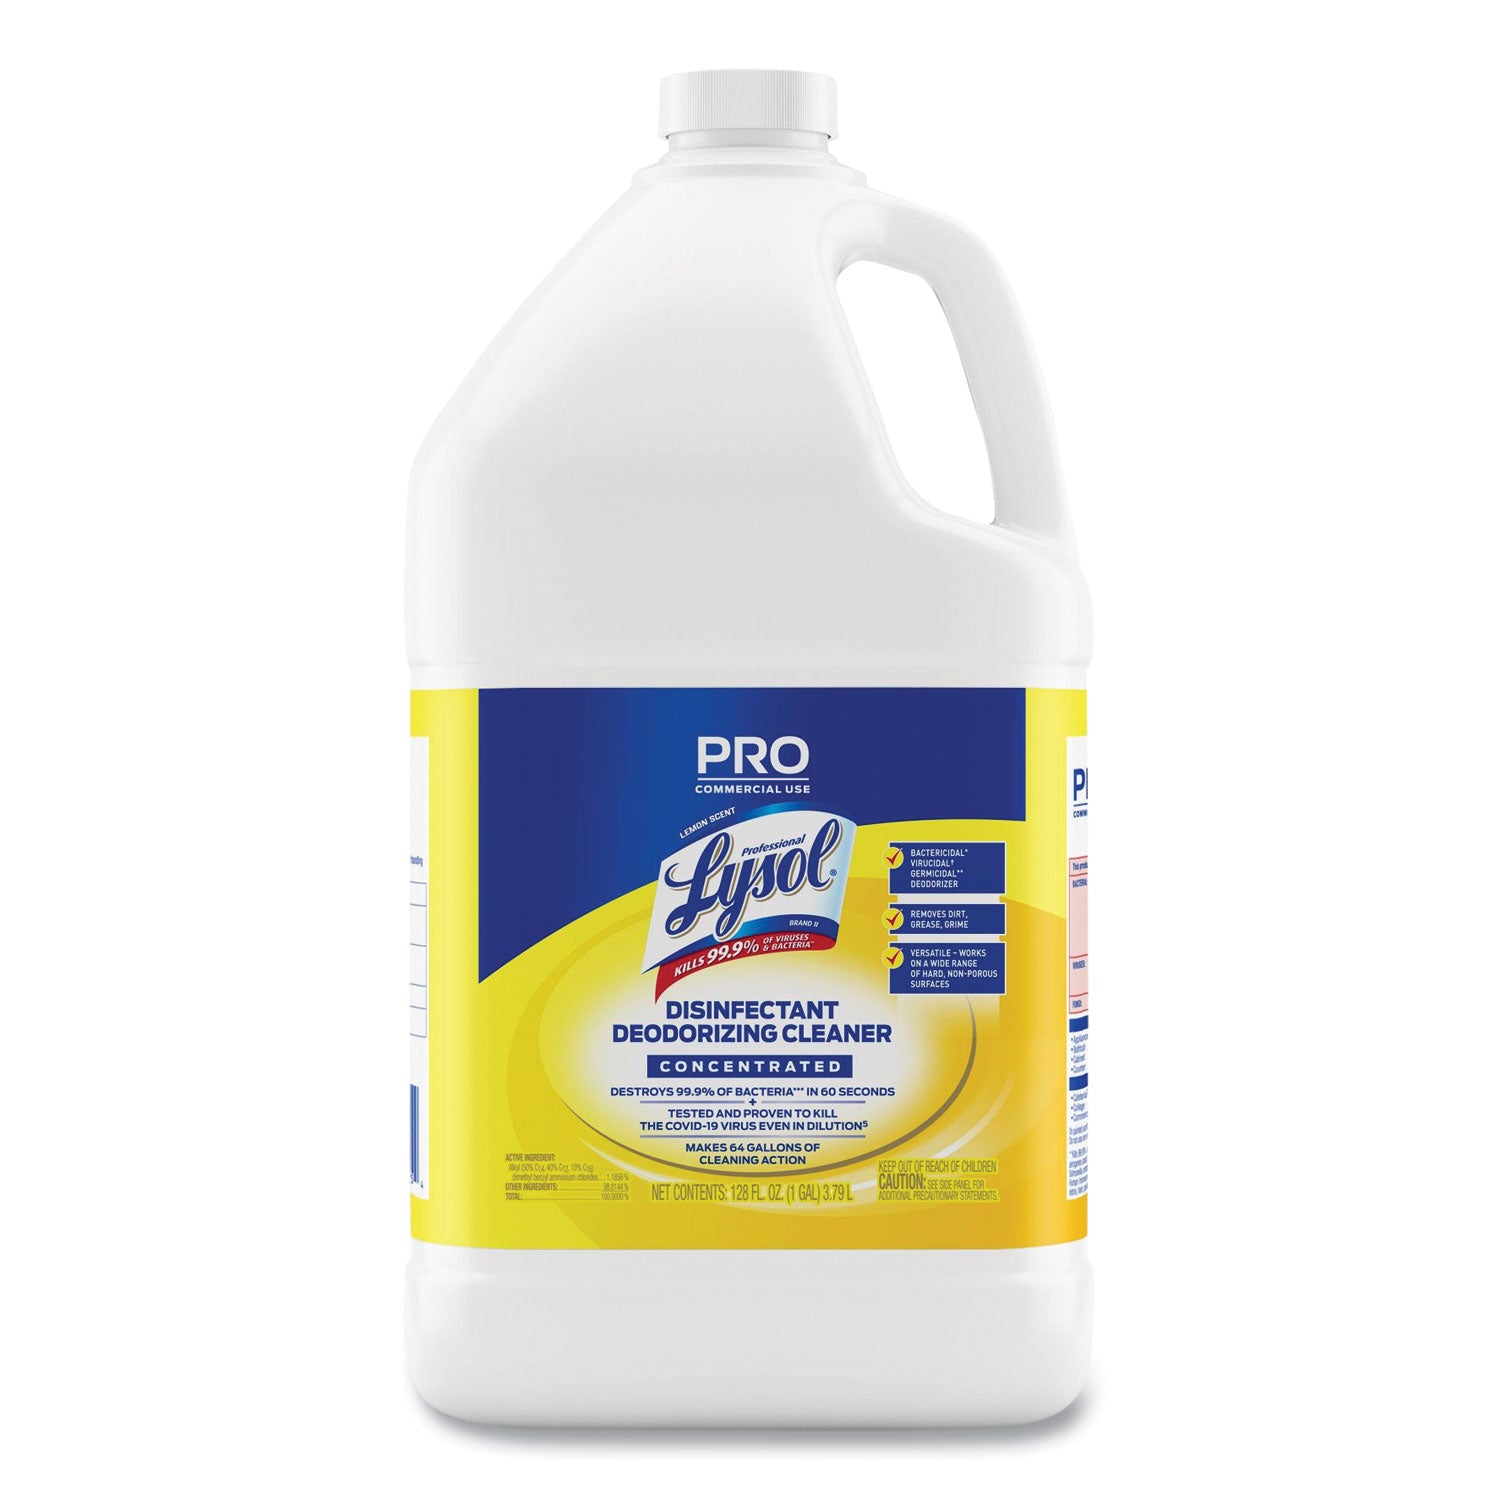 disinfectant-deodorizing-cleaner-concentrate-lemon-scent-128-oz-bottle-4-carton_rac99985ct - 4